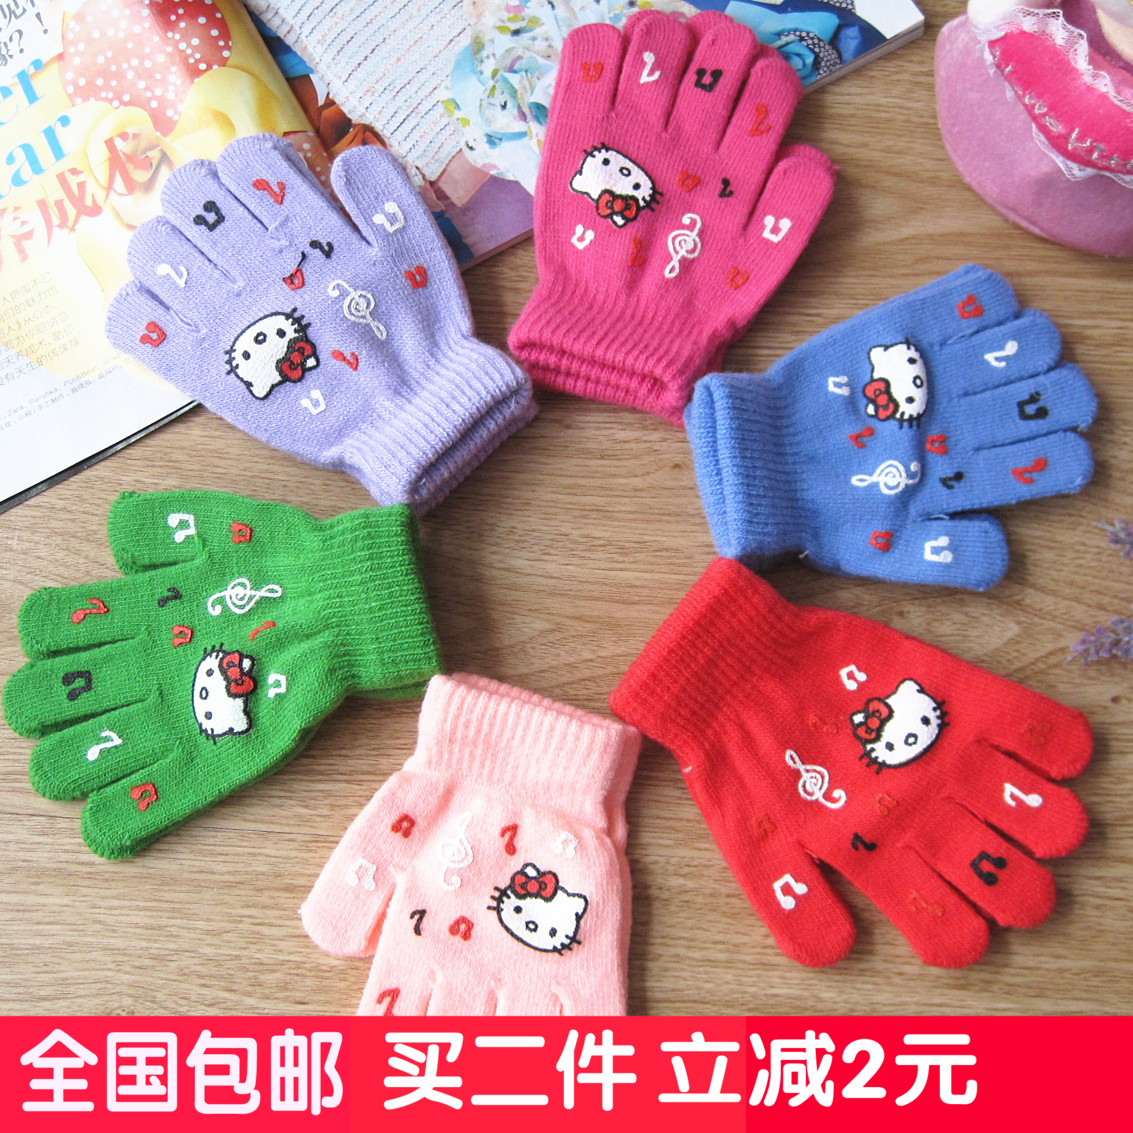 秋冬季可爱女童保暖手套 KT猫全指针织卡通手套 冬天儿童手套包邮